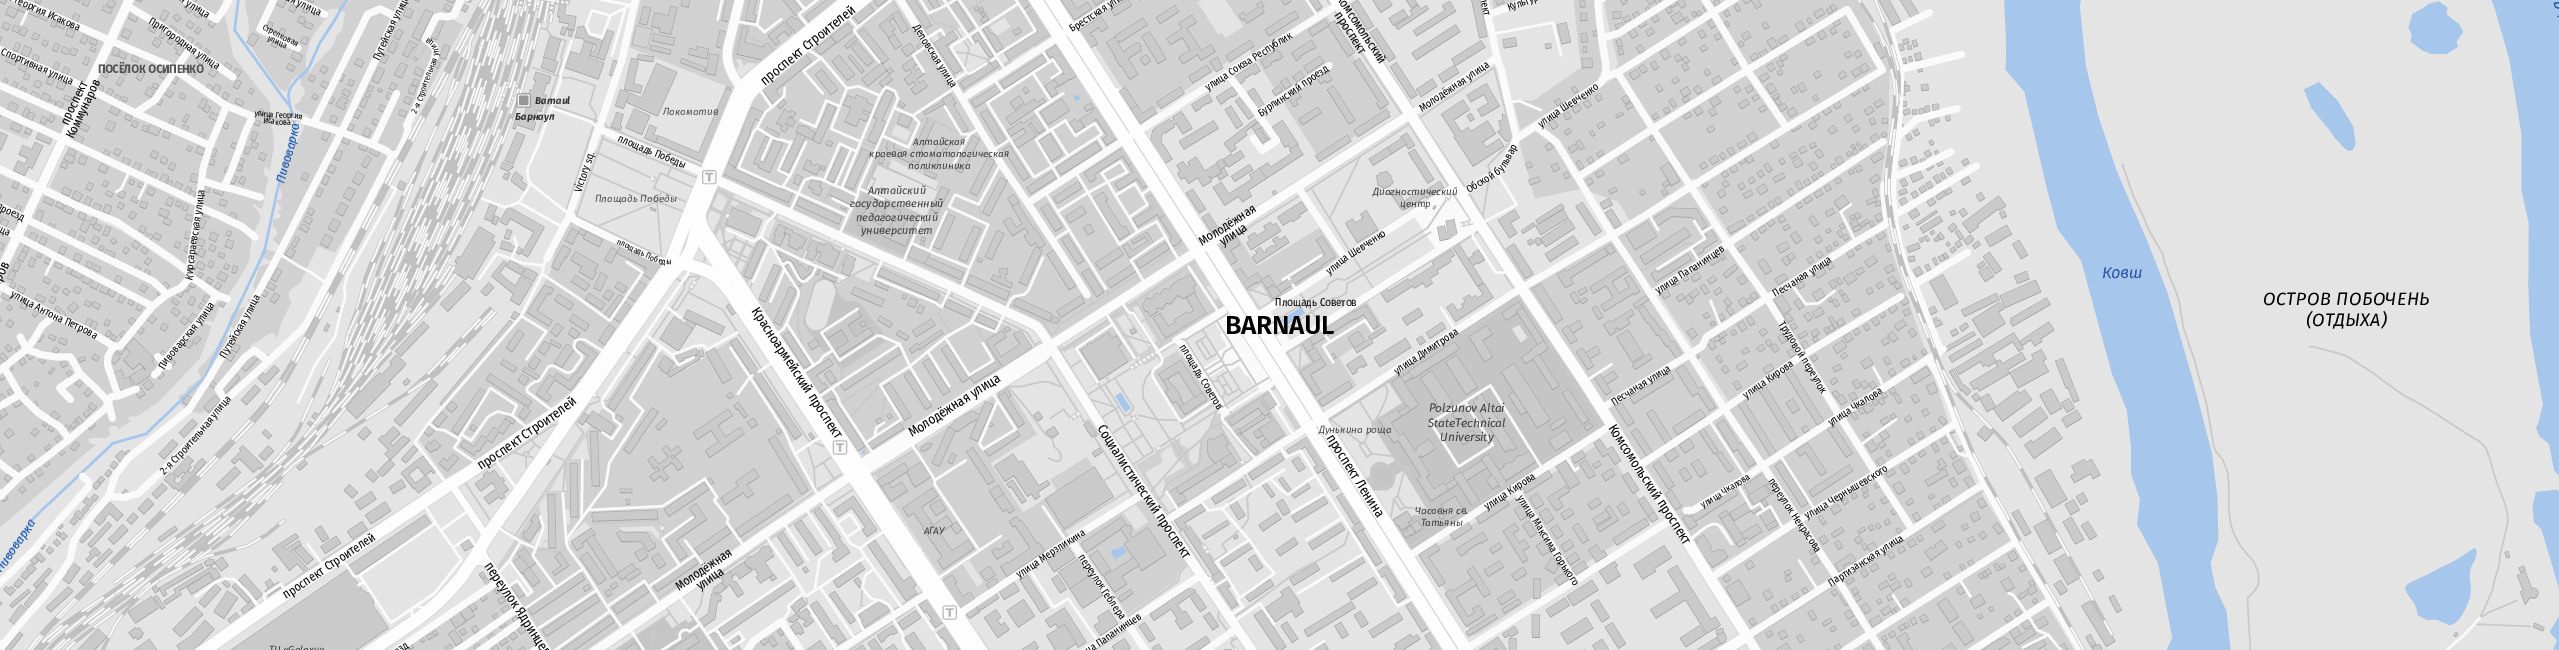 Stadtplan Barnaul zum Downloaden.